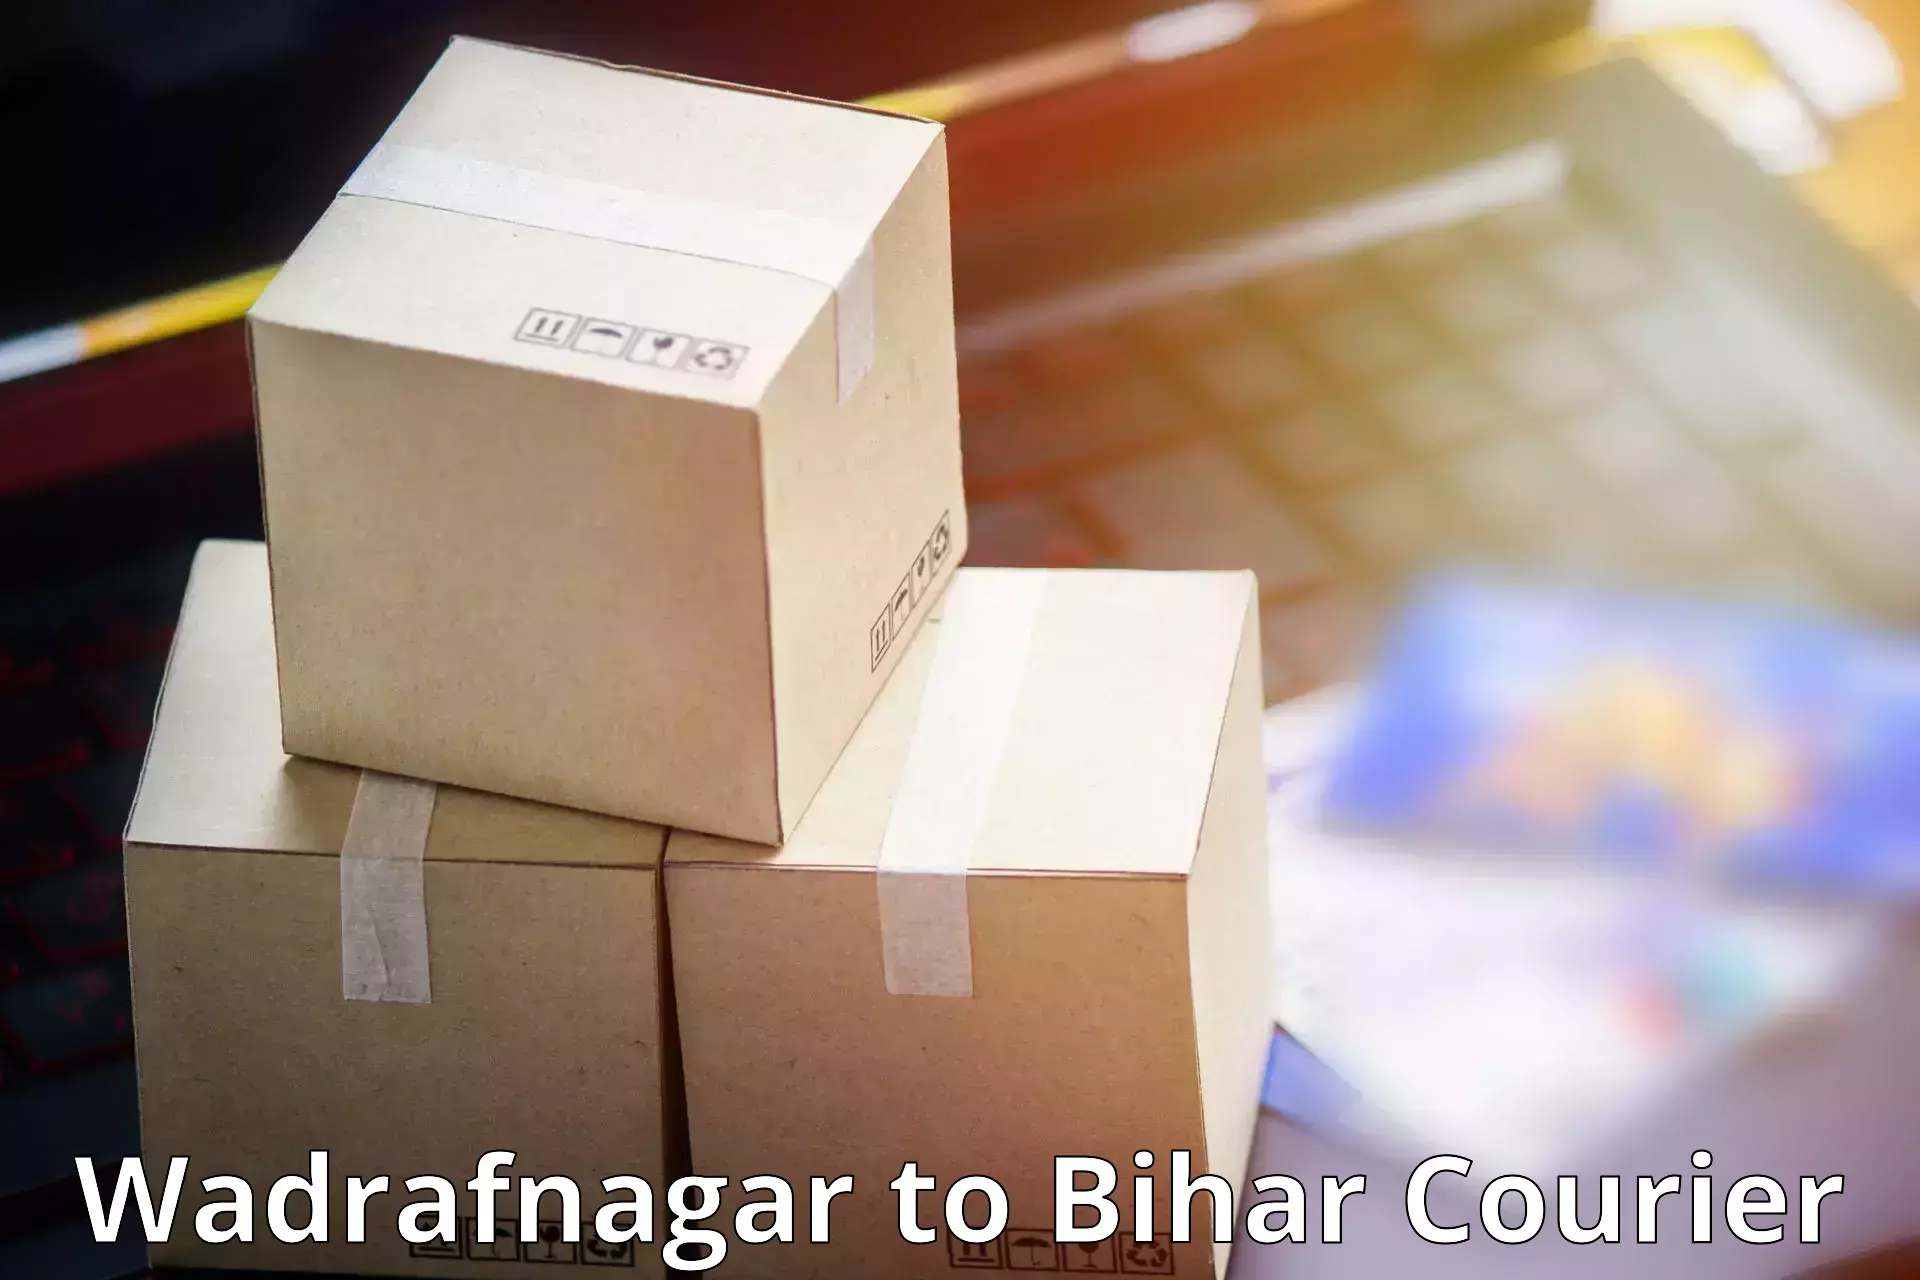 Cost-effective freight solutions Wadrafnagar to Kursela